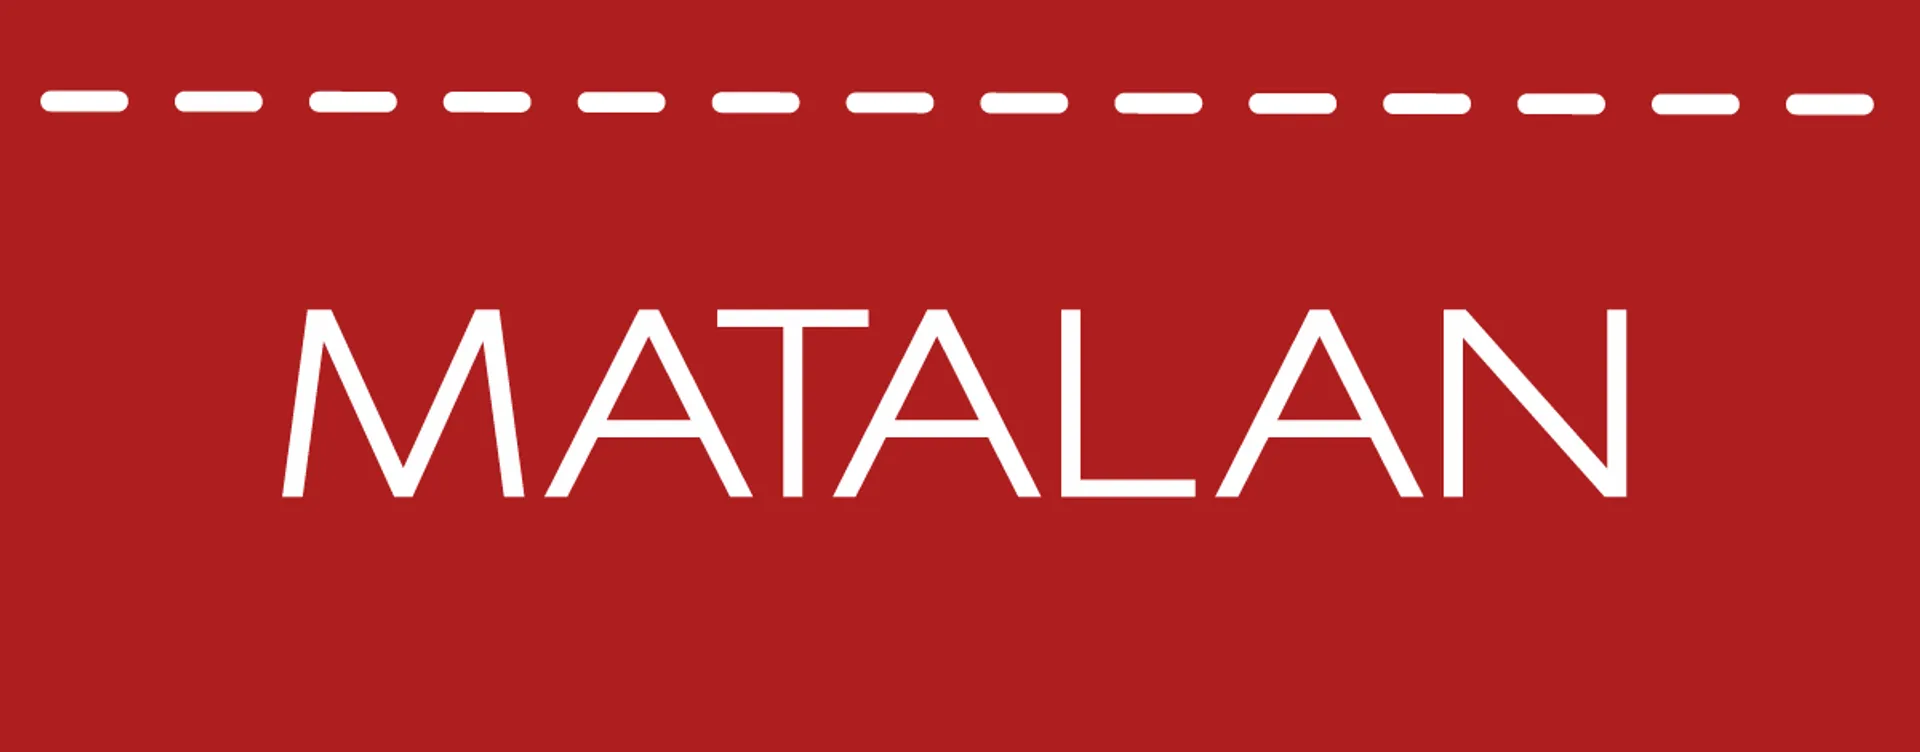 MATALAN logo. Current catalogue